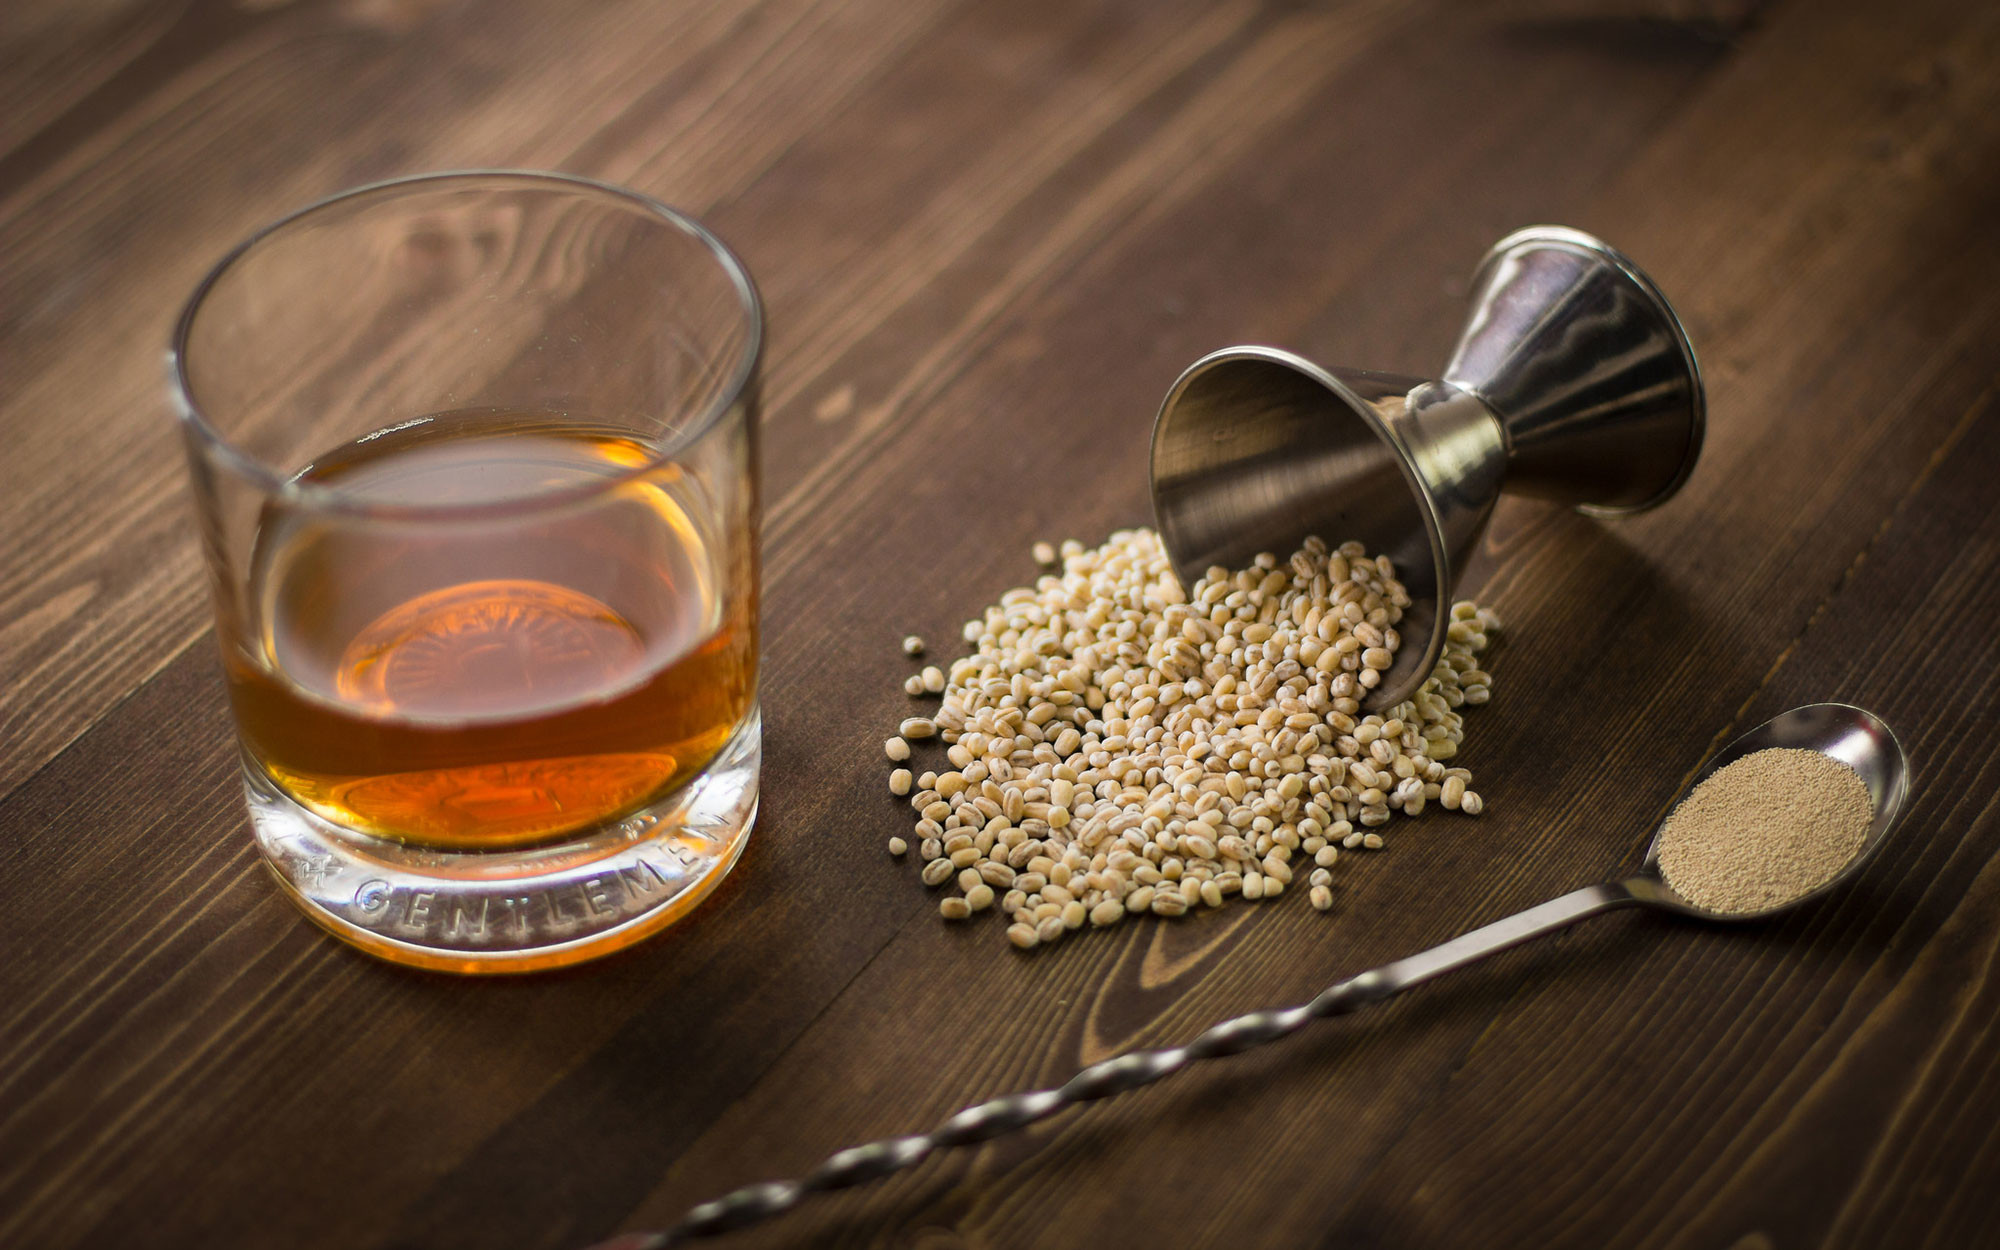 У токсикологов виски считается алкоголем того же класса, что и некачественный самогон. Фото © flickr / Invaluable Official